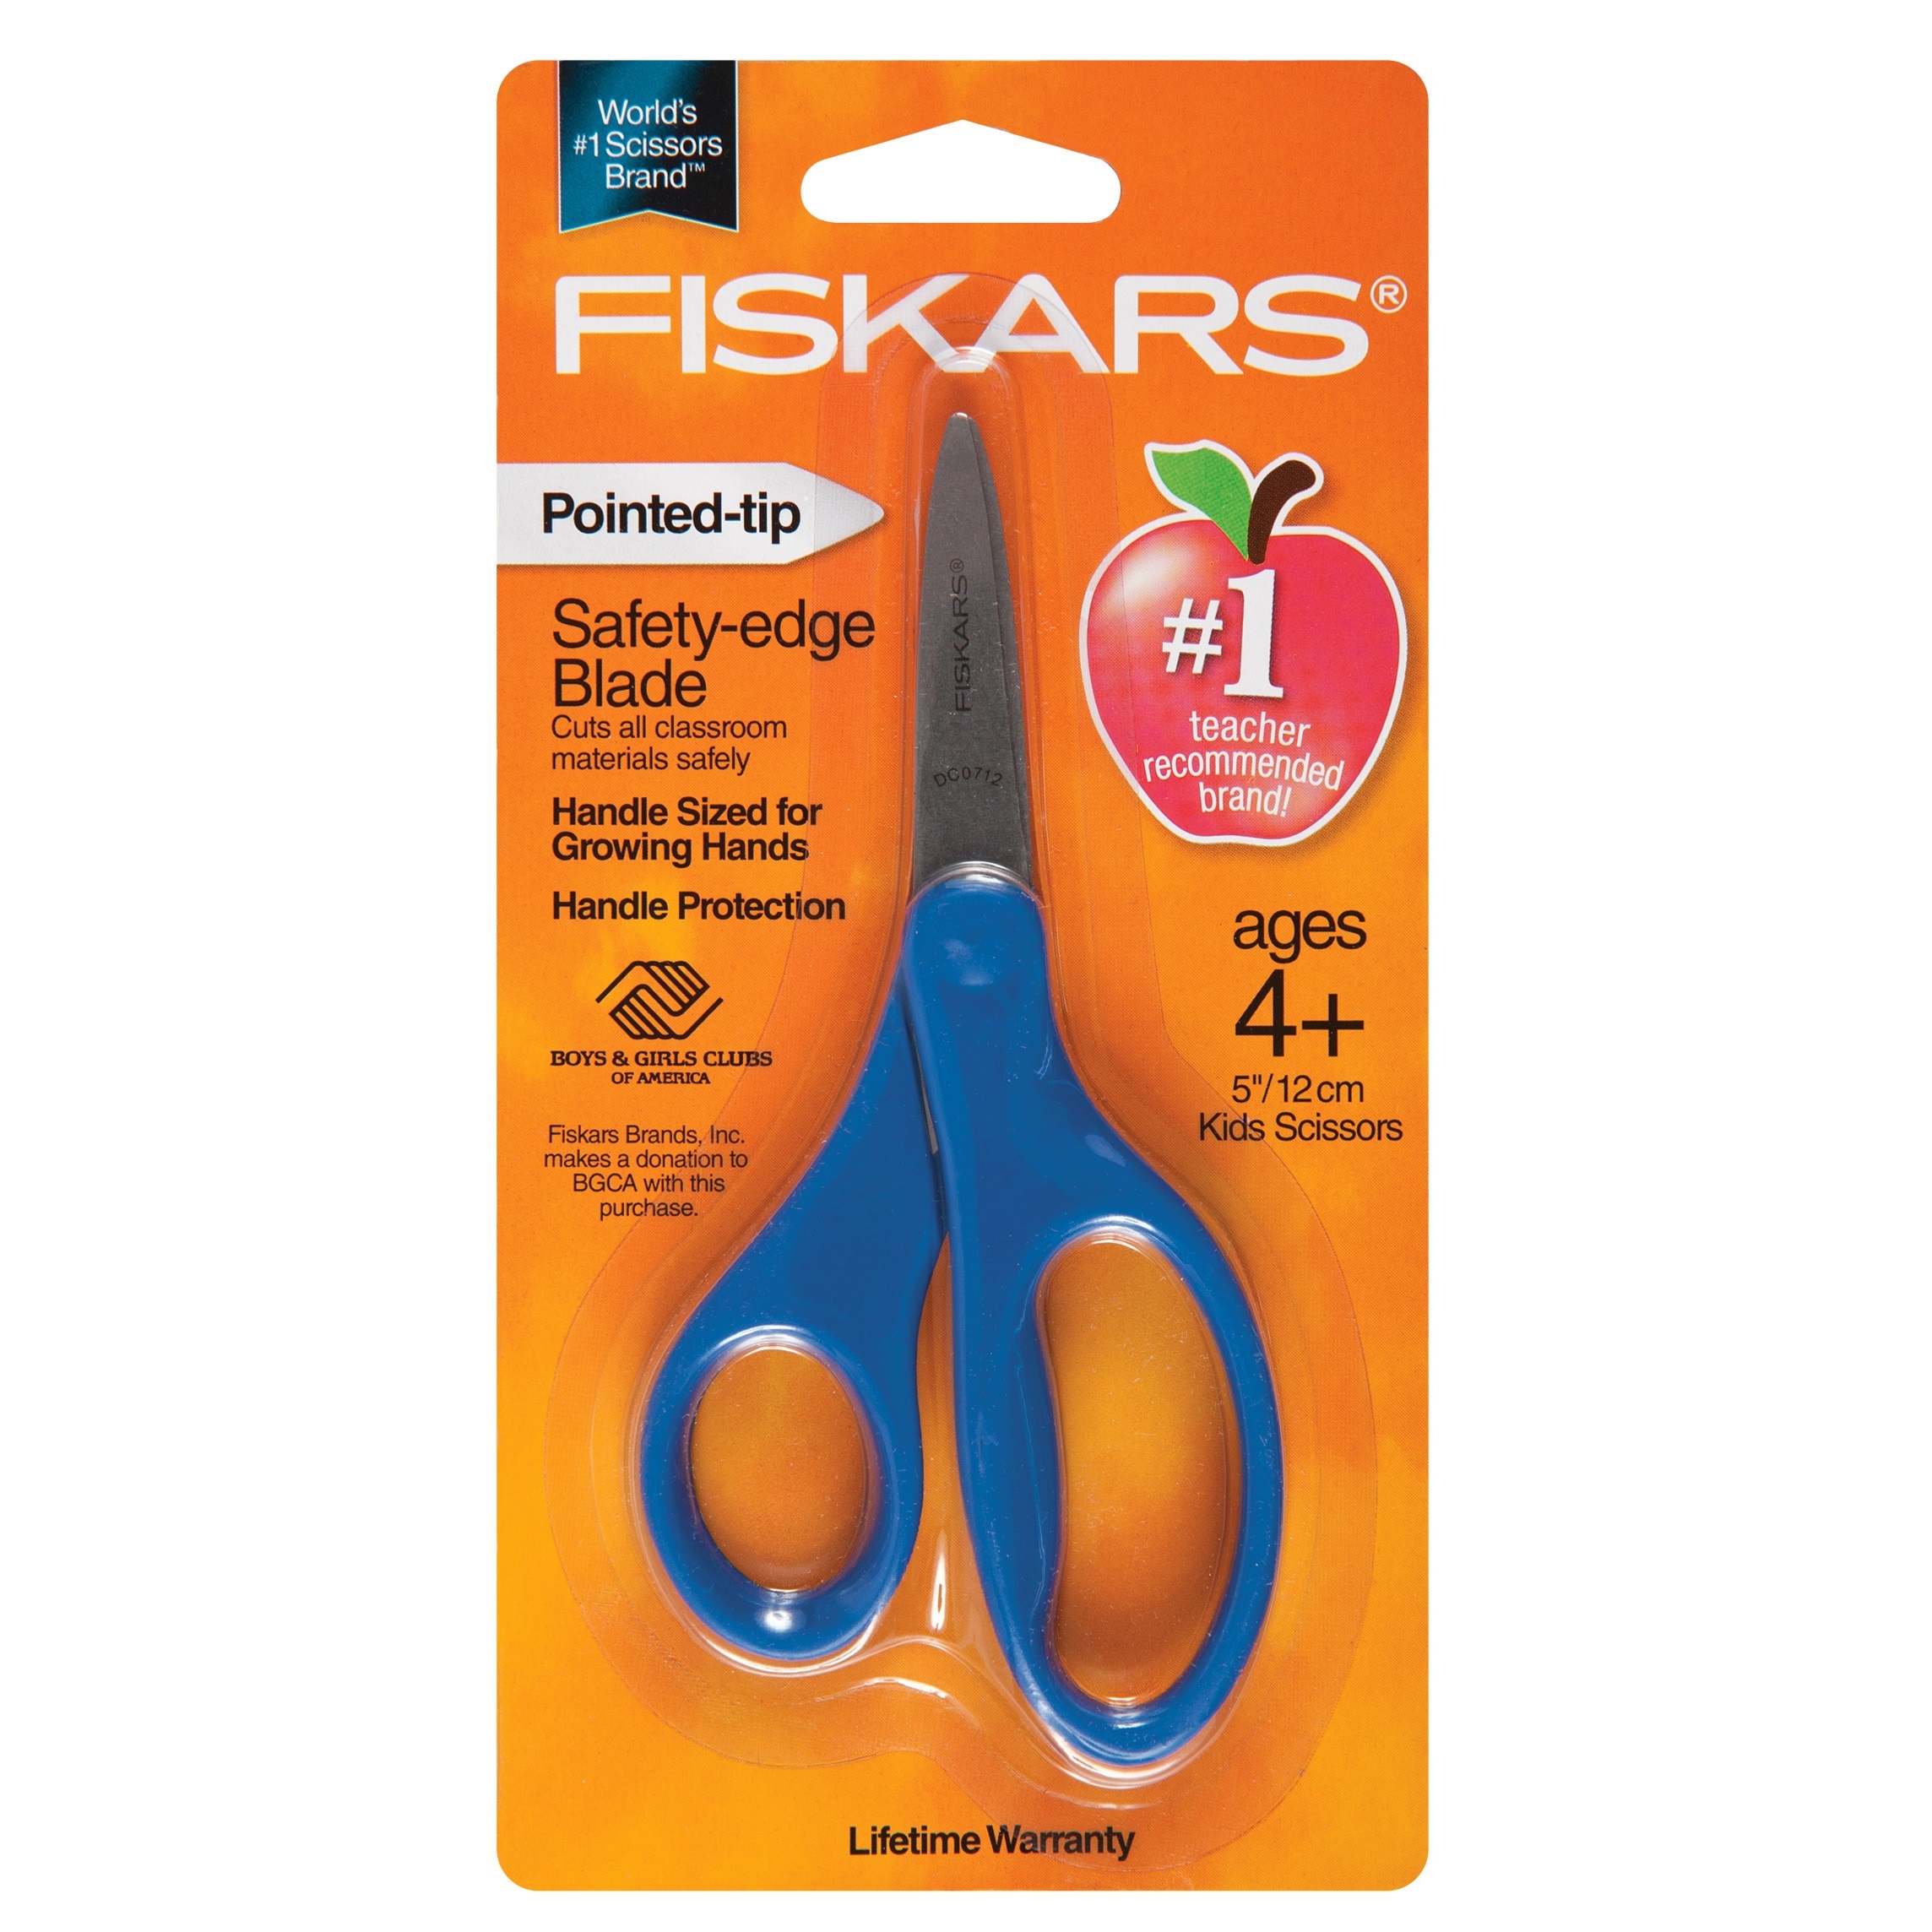 Fiskars For Kids Scissors, Pointed-Tip, 5+, 1 pair